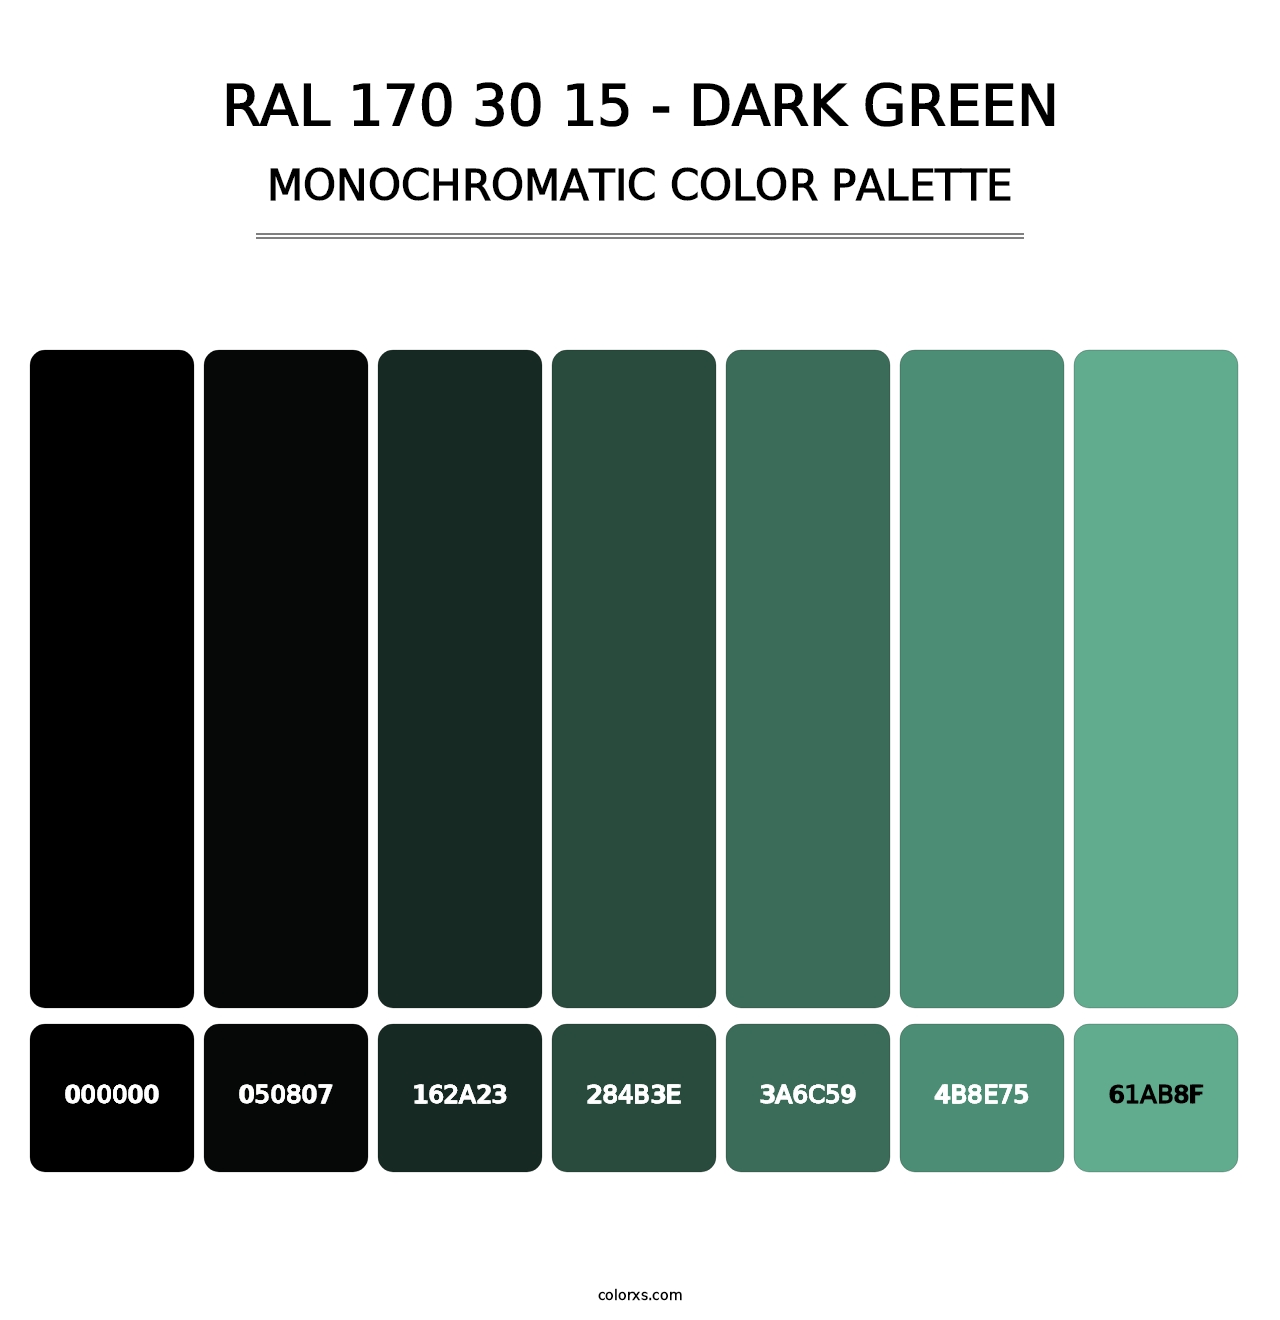 RAL 170 30 15 - Dark Green - Monochromatic Color Palette